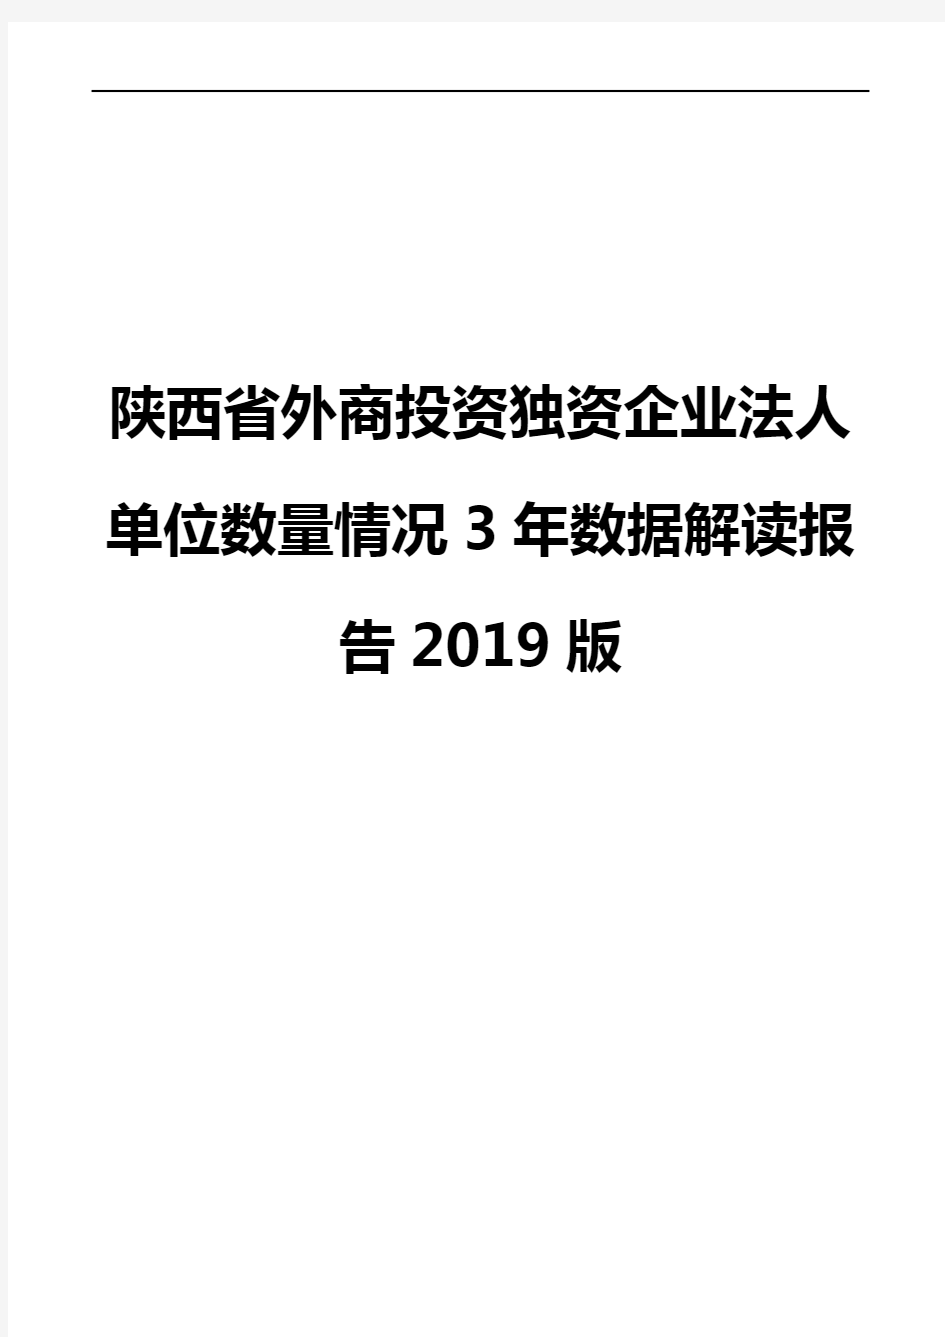 陕西省外商投资独资企业法人单位数量情况3年数据解读报告2019版